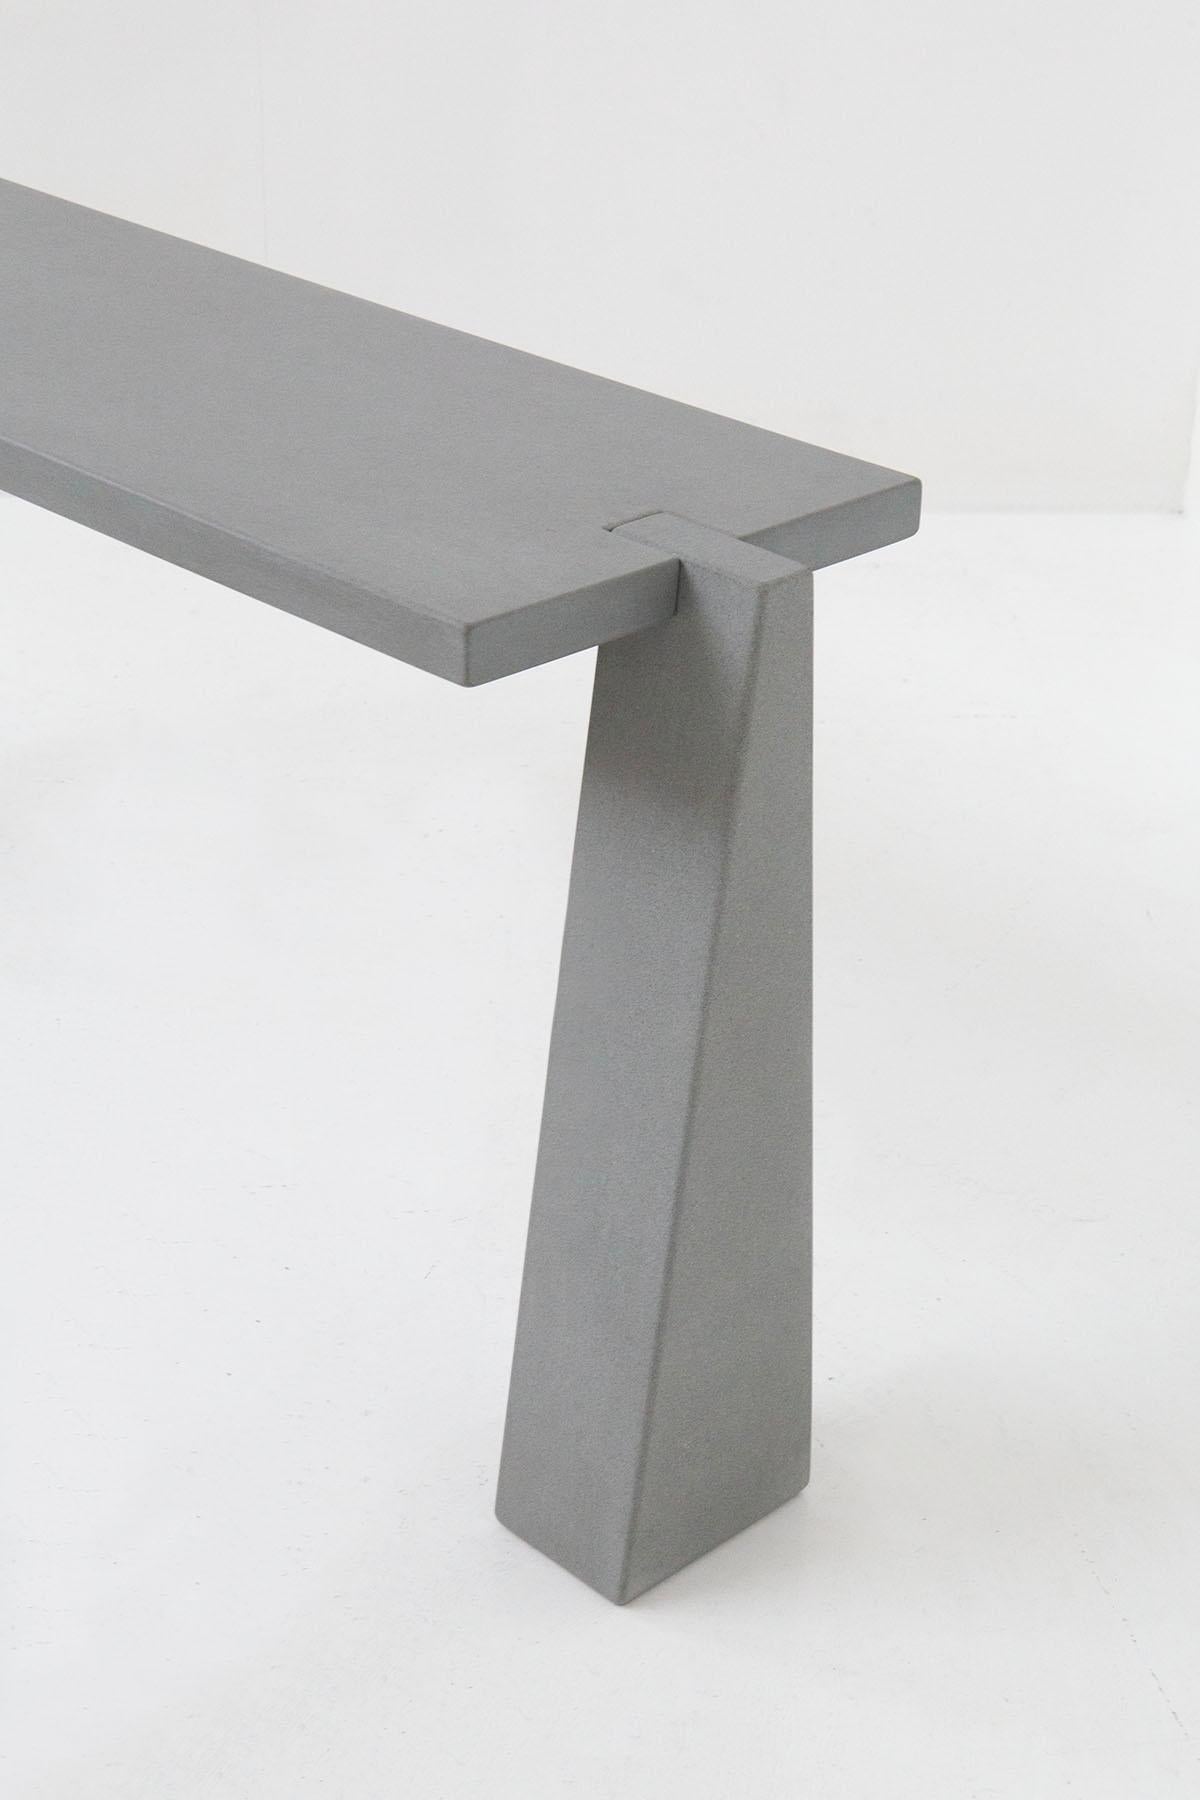 Italian Console Serena Stone Table Design Angelo Mangiarotti